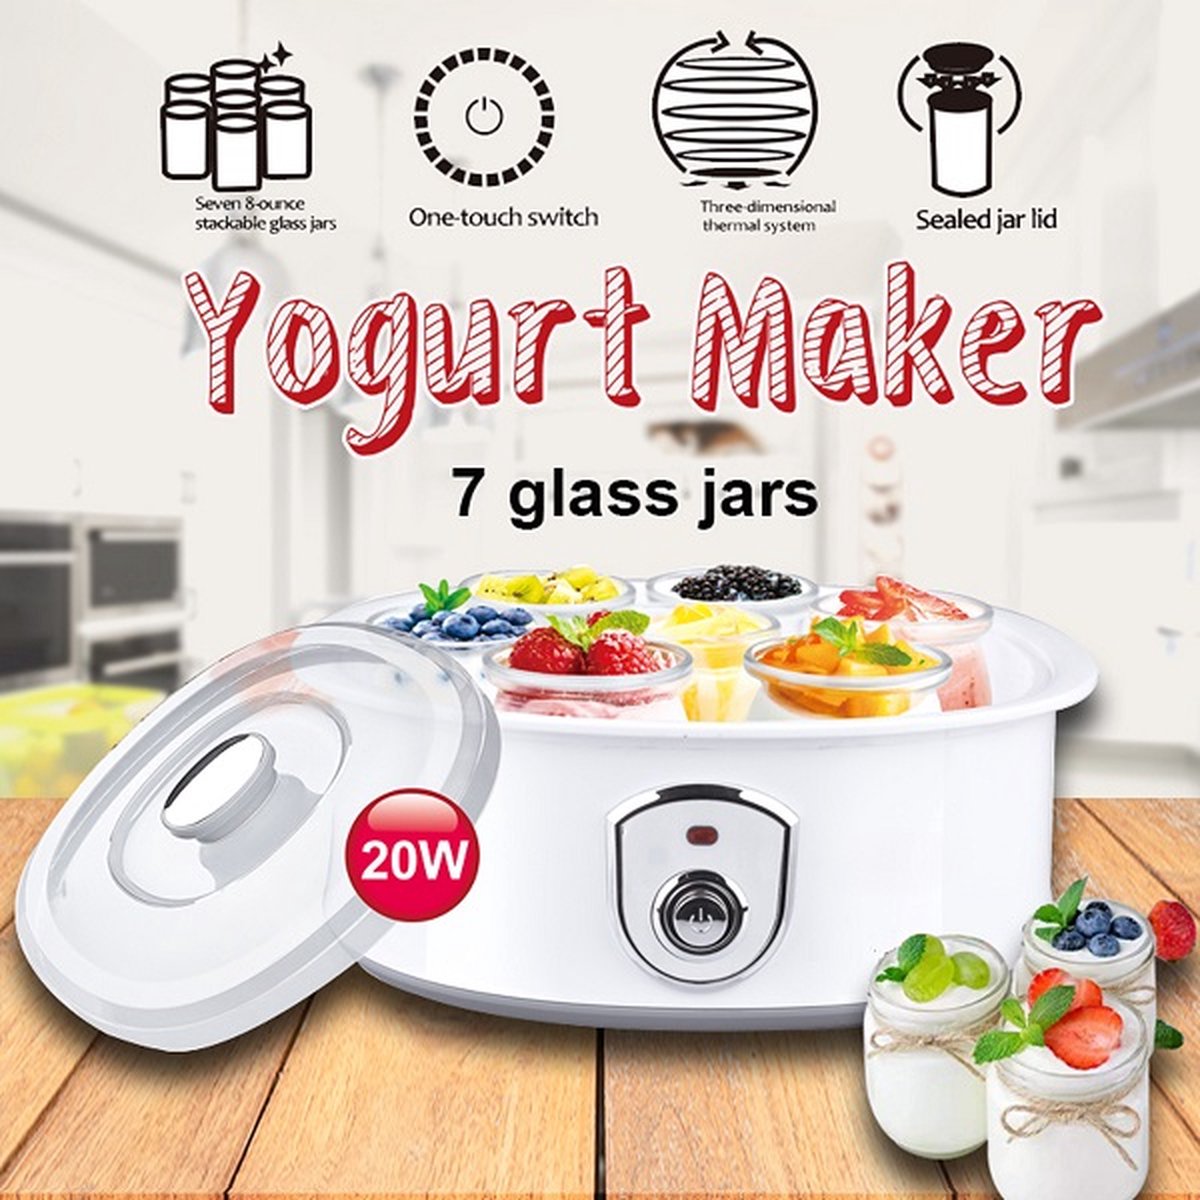 Ariko Elta Yoghurt Maker - inclusief 7 Glazen Bekers ( 180ml ) met Deksels - Temperatuur 42-50 graden - Makkelijk te reinigen